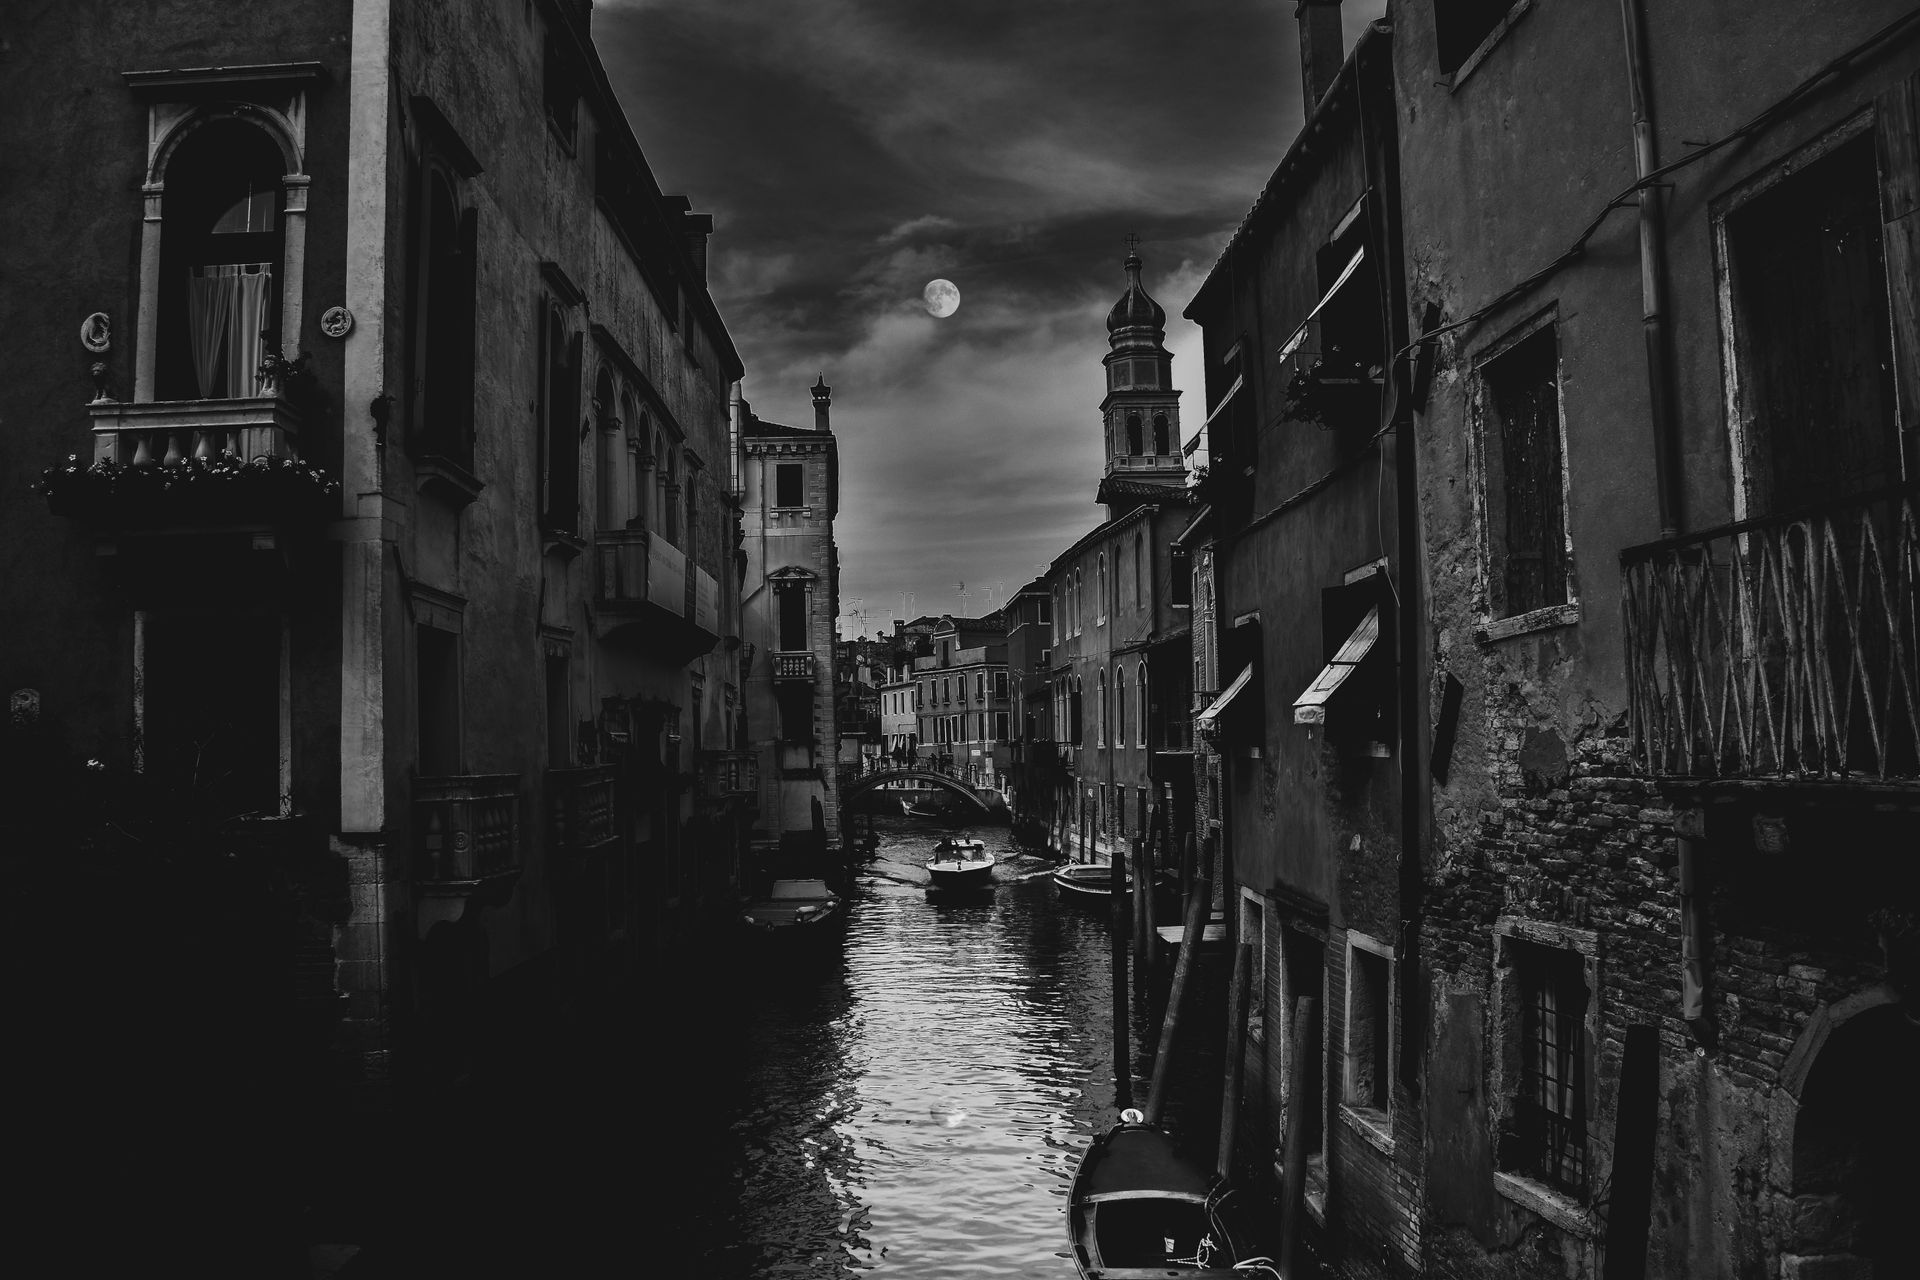 Scopri “Mysterious Venice” e vivi Venezia con un’esperienza unica creata per te da Palazzina Grassi.